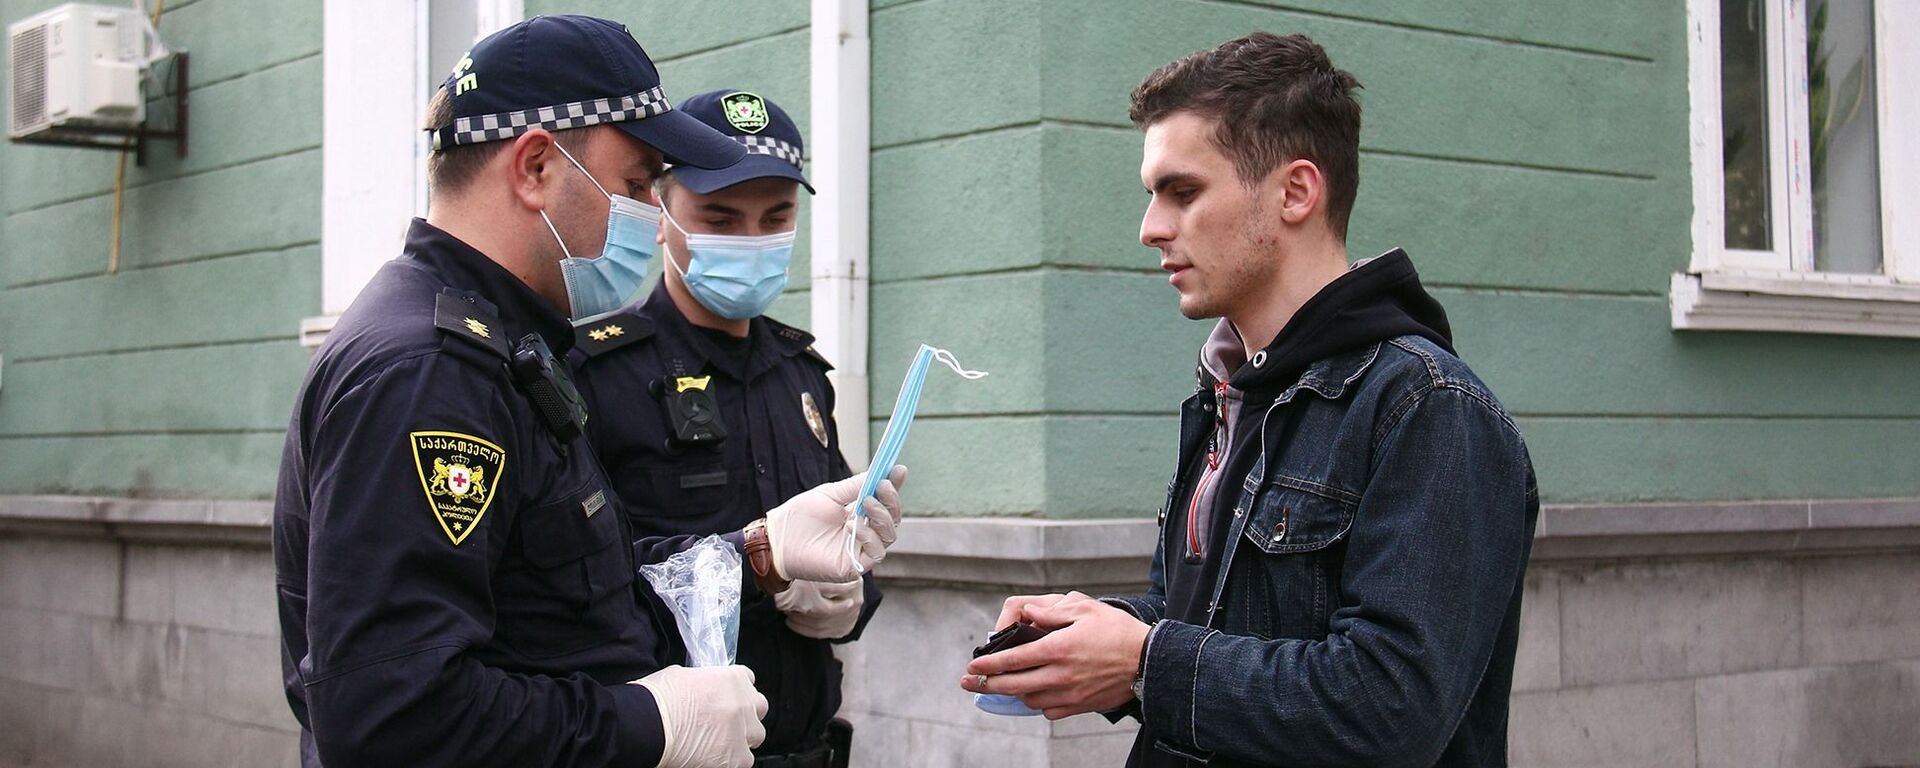 Эпидемия коронавируса - полиция проверяет как прохожие носят маски - Sputnik Грузия, 1920, 03.02.2021